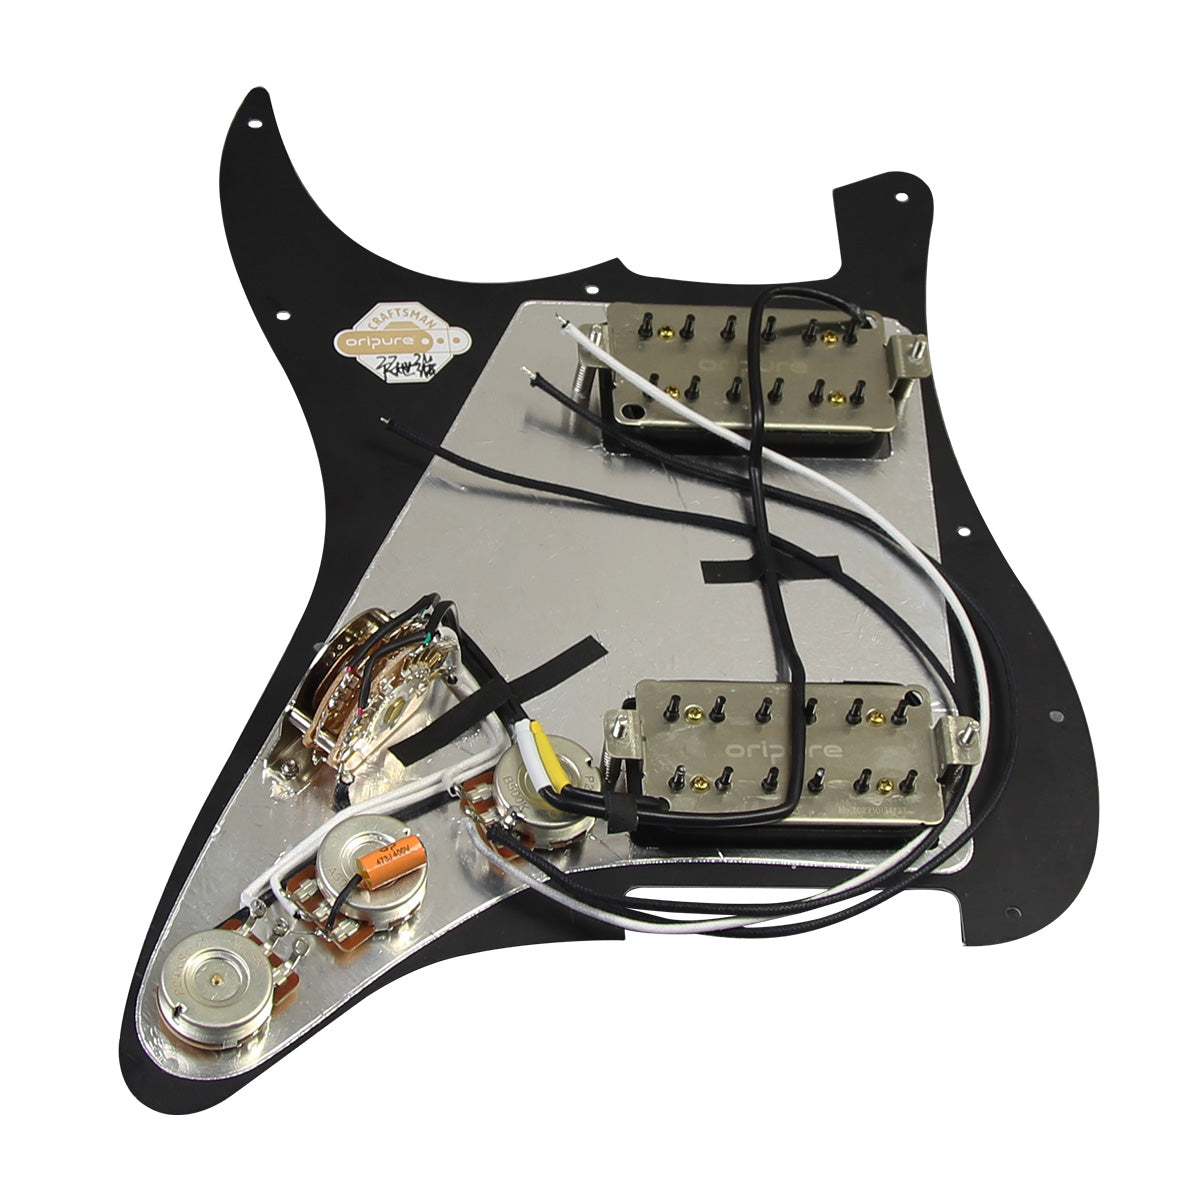 OriPure OLD-HH Alnico 5 HH Prewired Guitar Pickguard | iknmusic